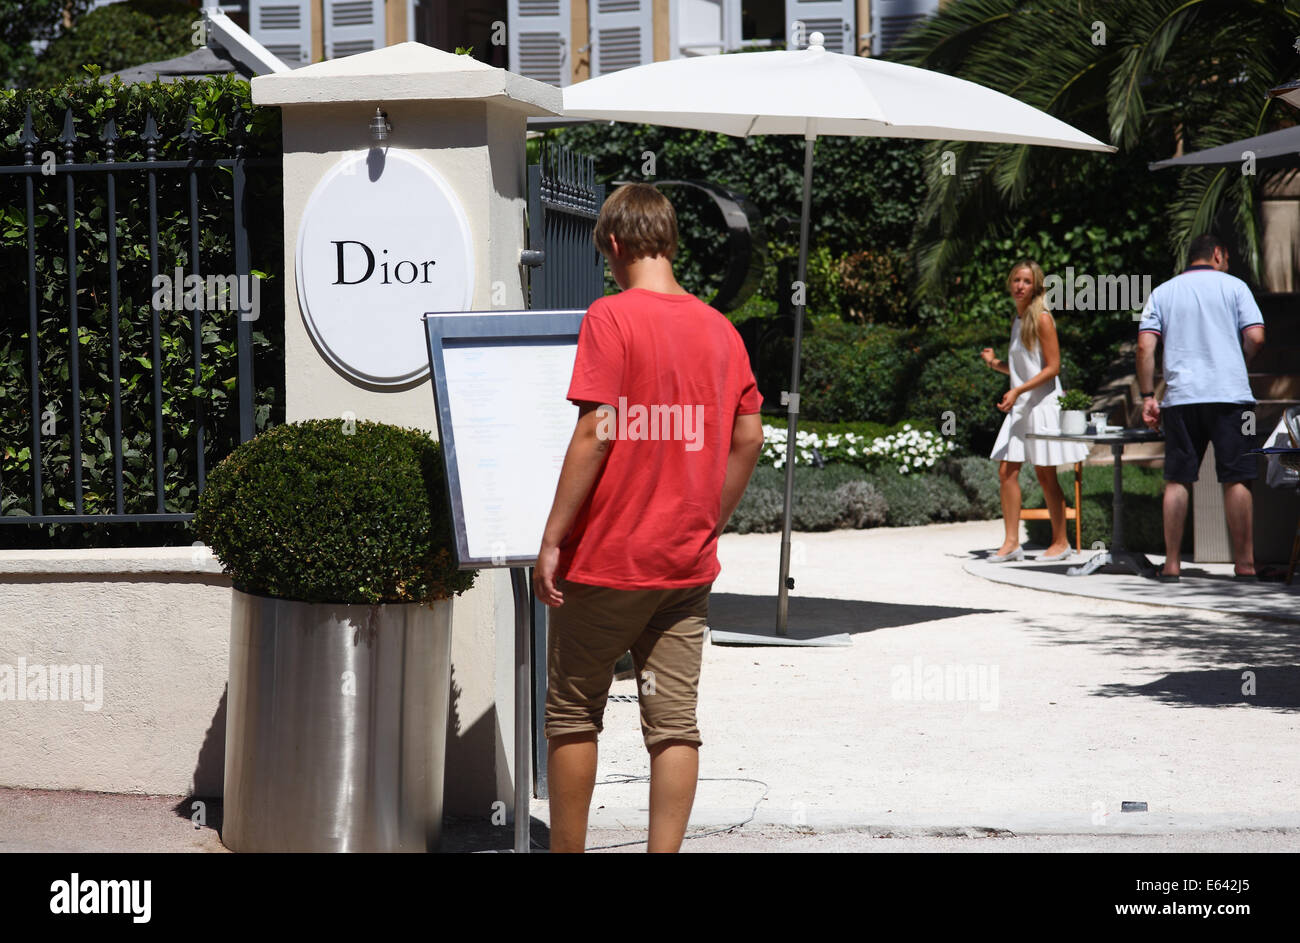 Dior Des Lices, St Tropez, France